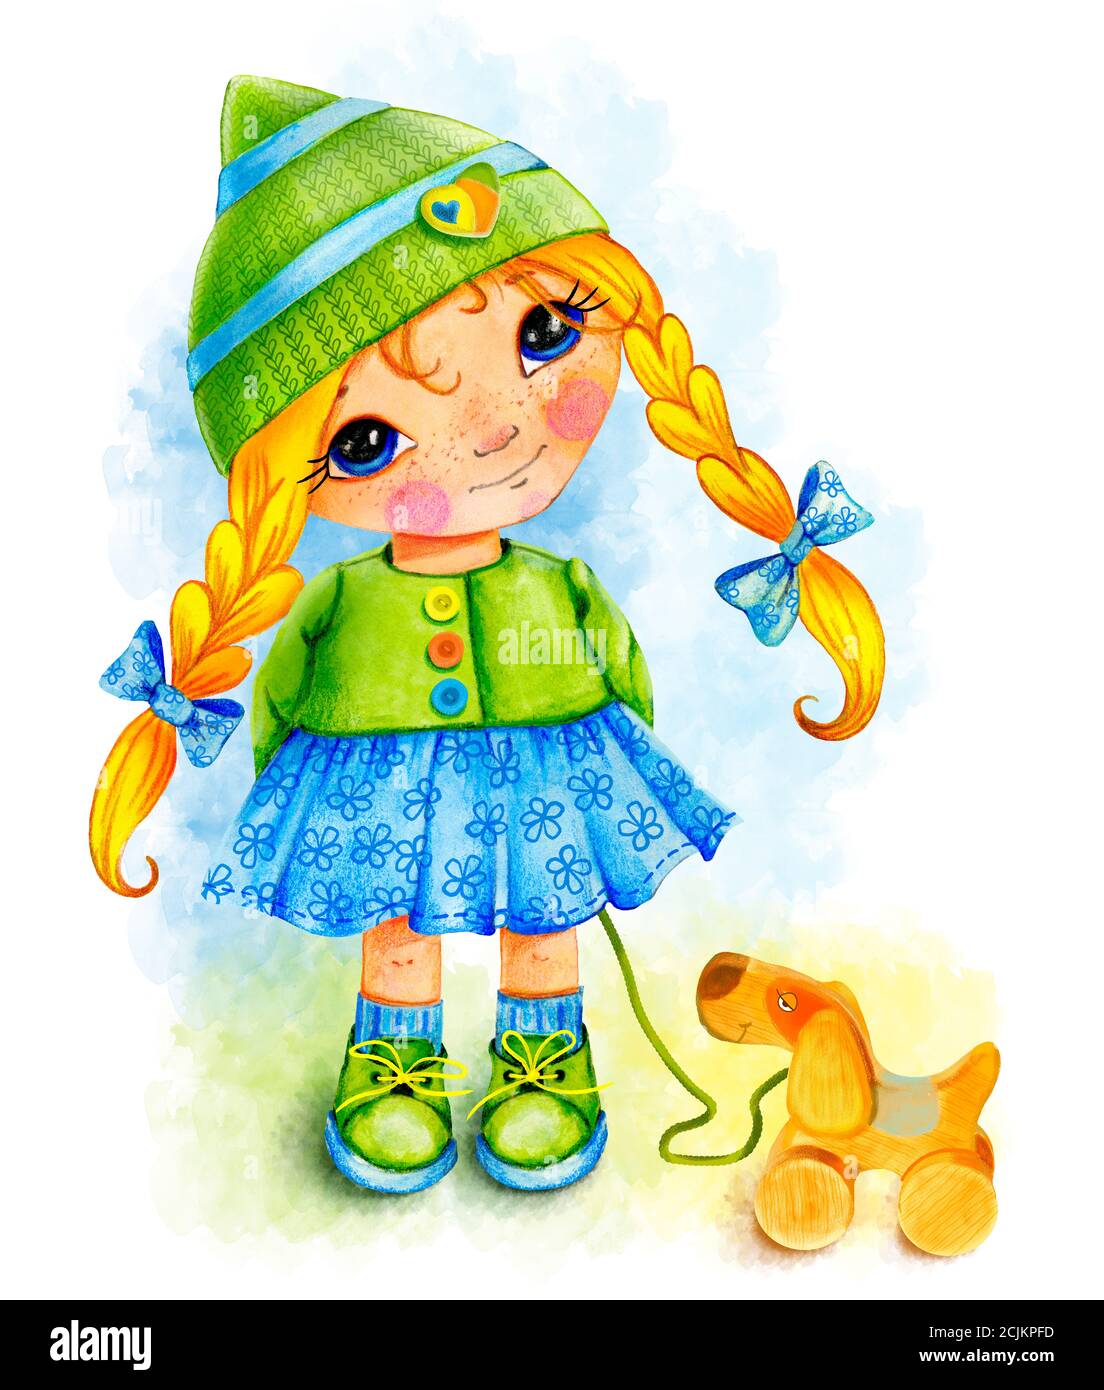 Petite fille mignonne dans un chapeau tricoté vert et une belle robe sourit, se tient, un chien en bois jouet dans ses mains, dessin aquarelle, fille avec long Banque D'Images